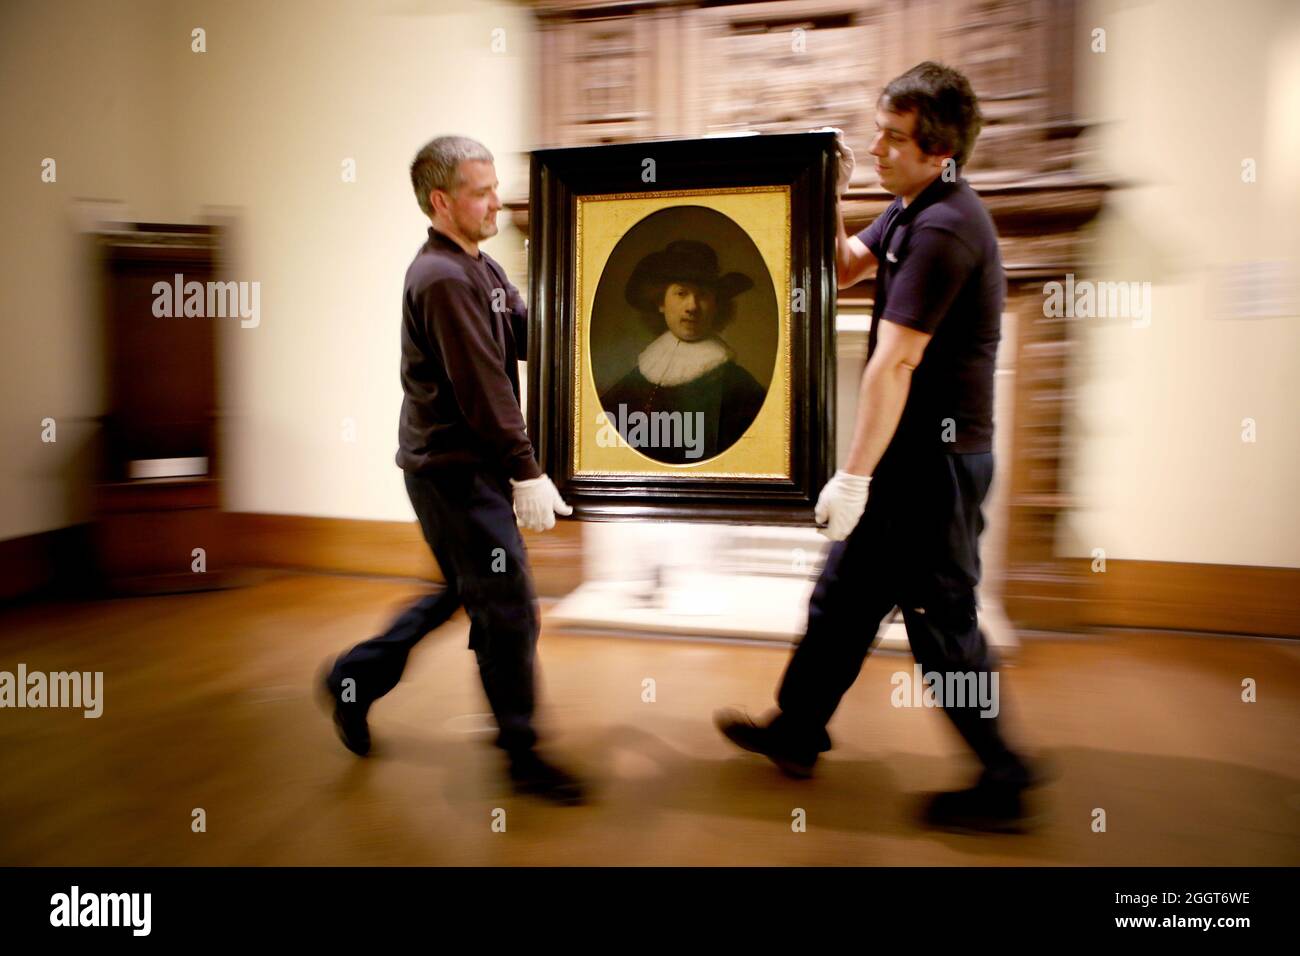 File photo datato 06/04/17 tecnici d'arte Andy Cavanagh (a sinistra) e Paul McCall spostare un dipinto dal titolo 'ritratto di pelvi' (1632) di Rembrandt alla collezione Burrell, Glasgow prima della ristrutturazione del museo. Una collezione d'arte accumulata da un magnate di spedizione è di tornare in mostra al pubblico nel marzo del prossimo anno dopo un restauro del museo di 68.25 milioni di sterline. Data di emissione: Venerdì 3 settembre 2021. Foto Stock